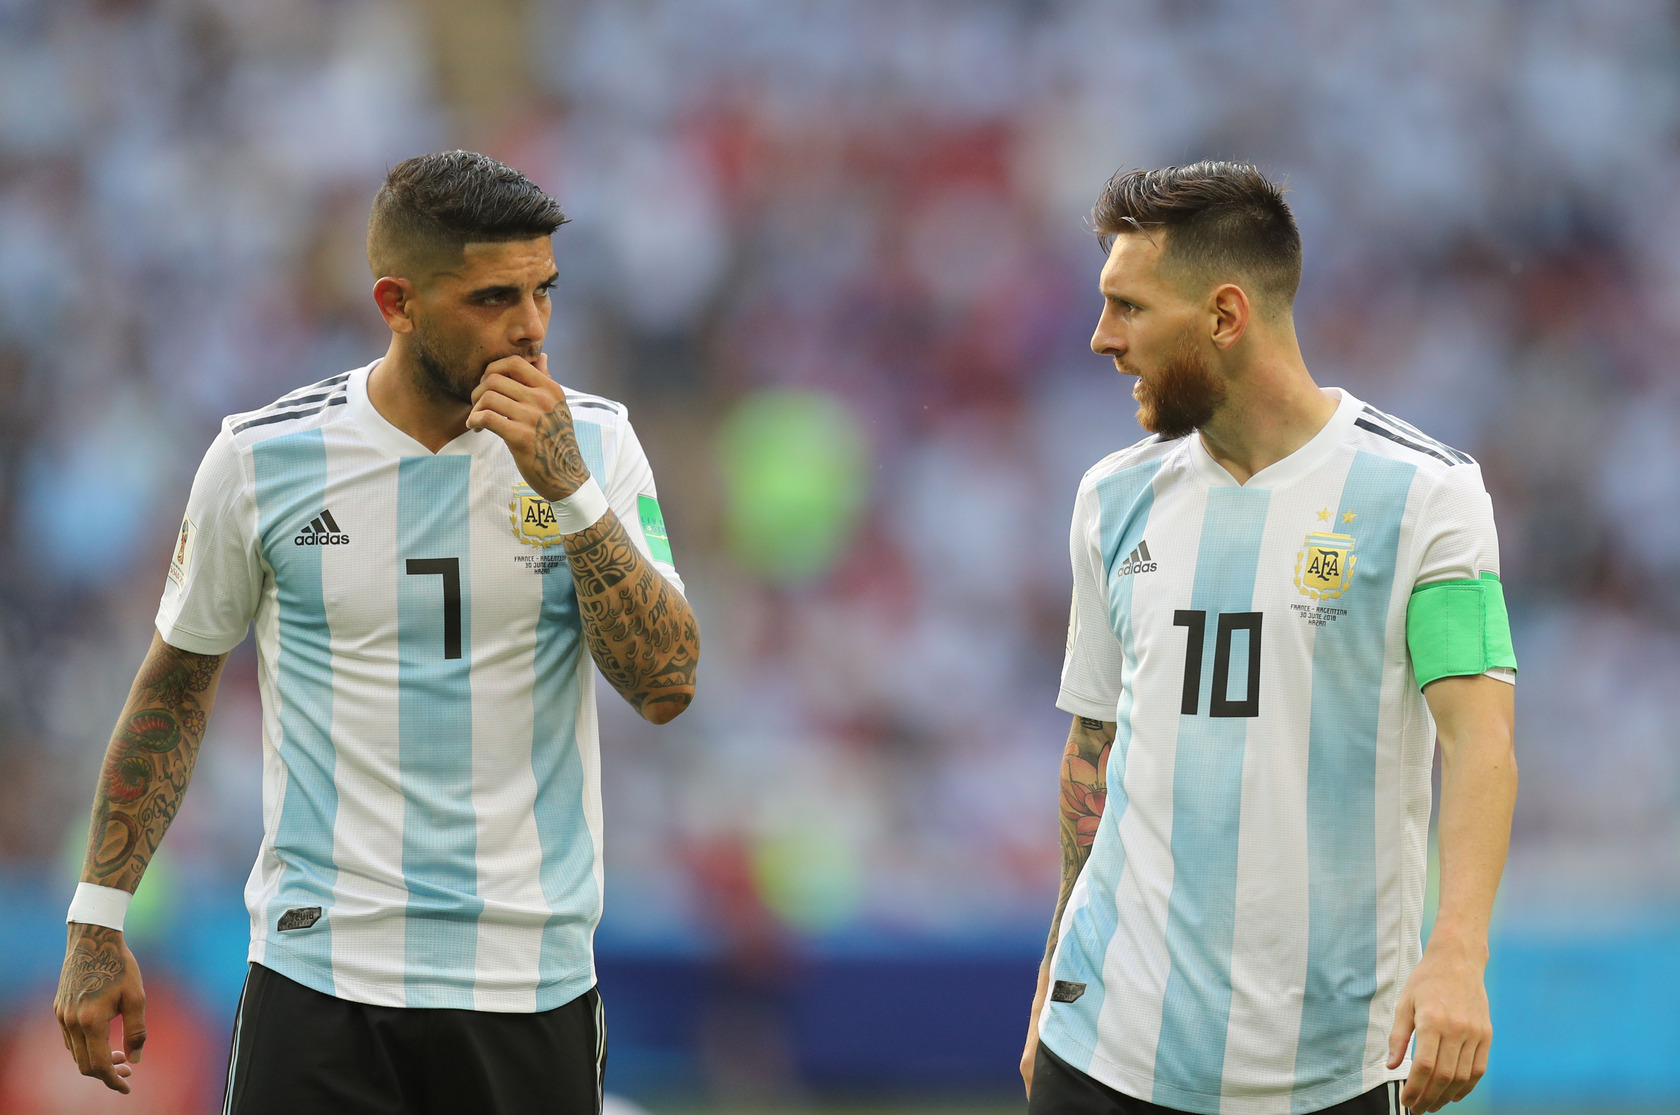 阿根廷世界杯竞猜,世界杯比赛,球队进球数,球队比分情况,球队胜负情况